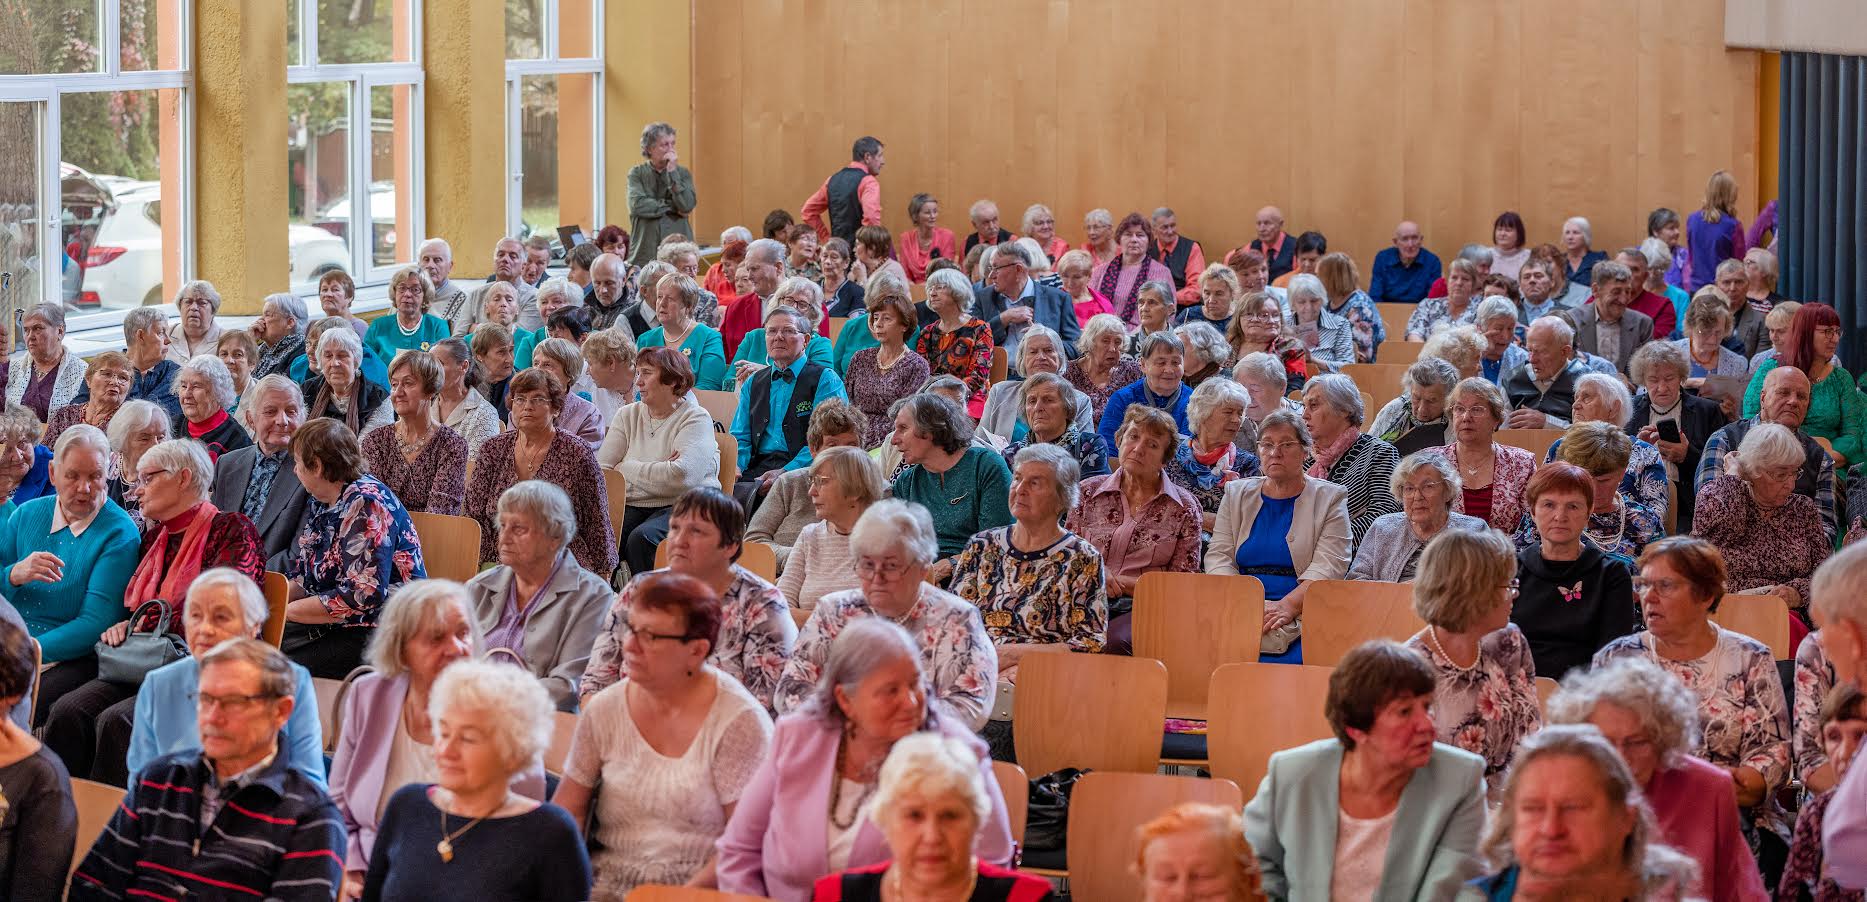 Kolmandat korda toimunud eakate festival meelitas teineteise seltskonnast rõõmu tundma 350 külastajat. Foto: AIGAR NAGEL